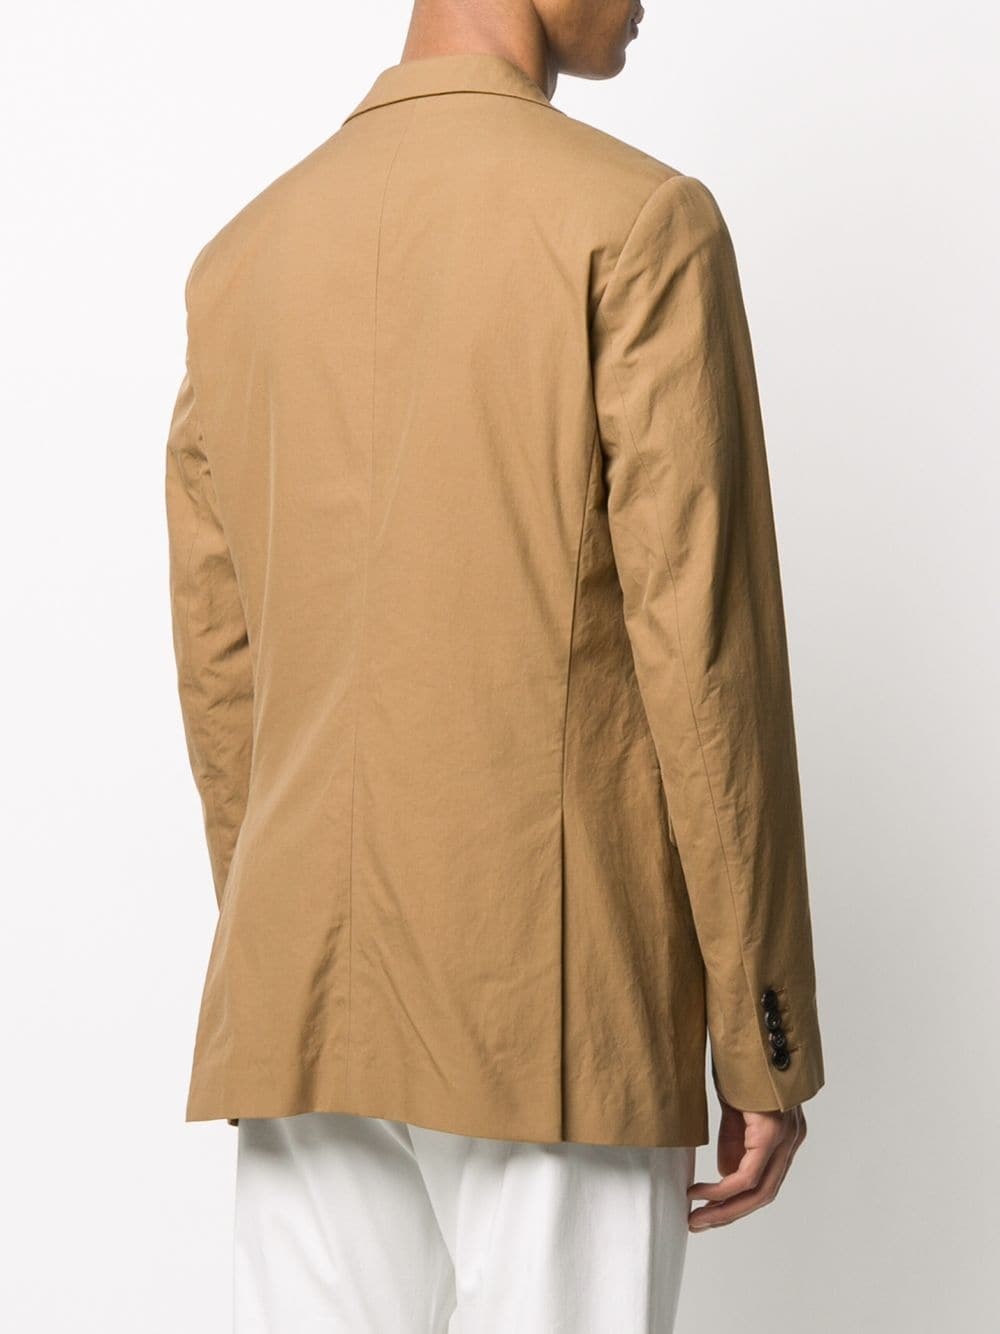 Dries Van Noten Man`s brown cotton jacket - 14